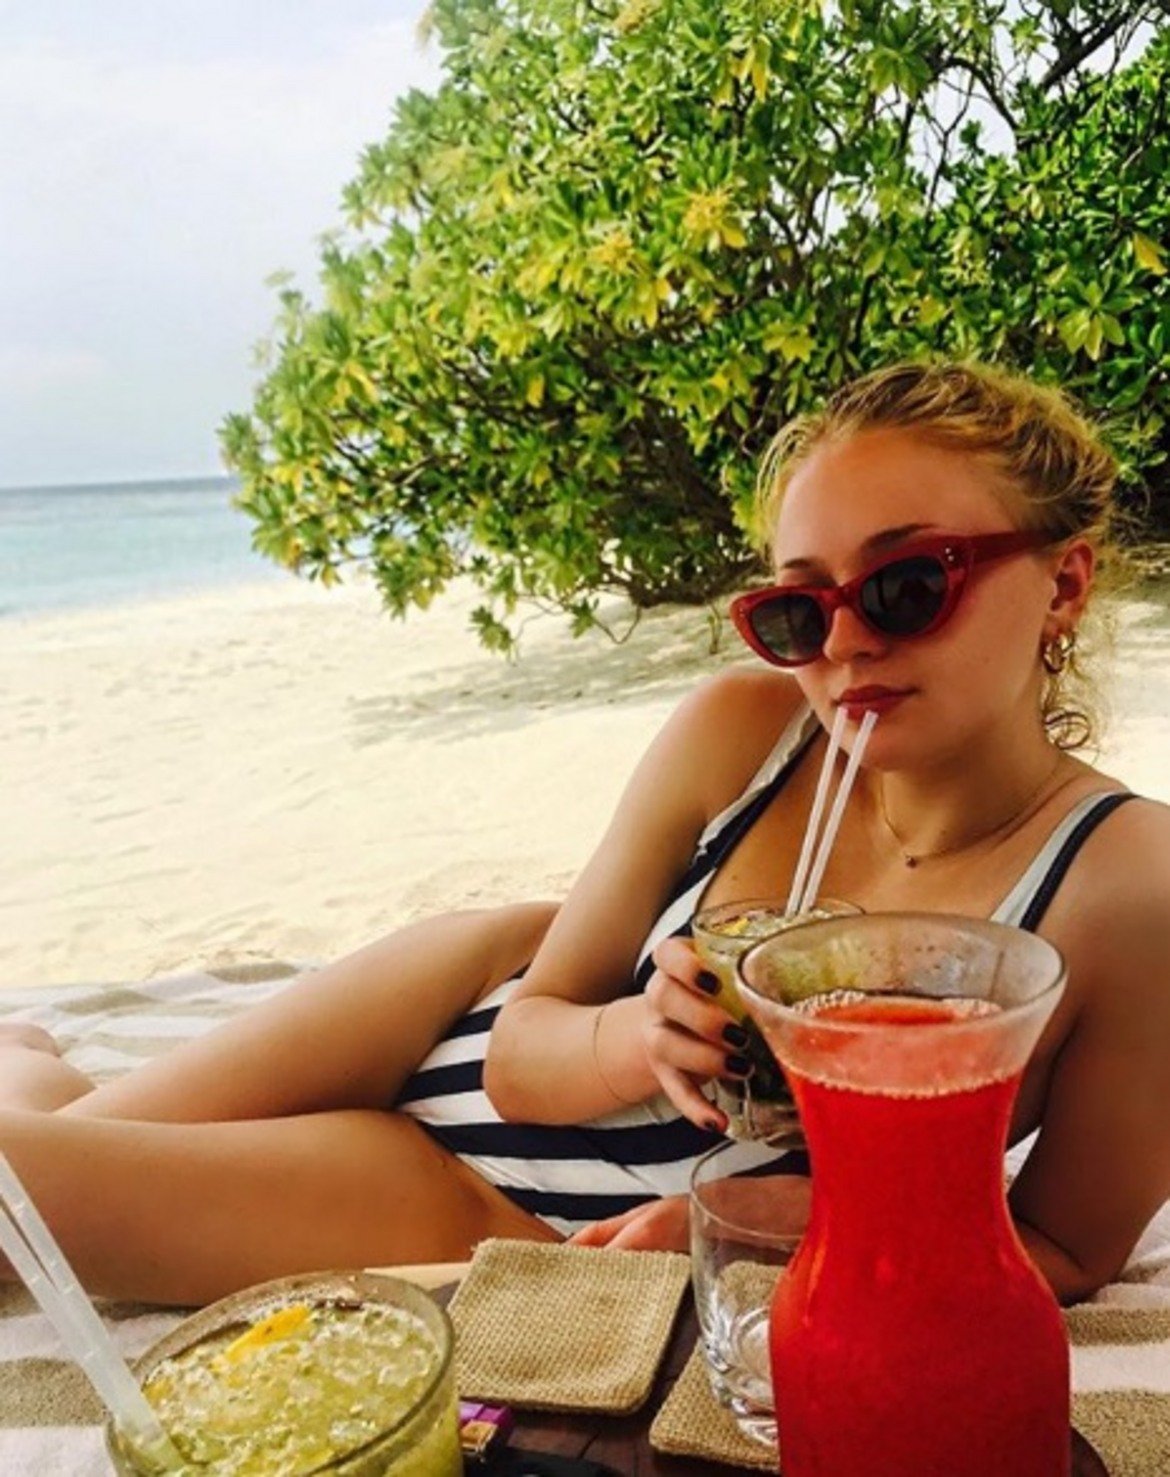  Софи Търнър 

Актрисата от Game of Thrones избра за почивката си частен остров на Малдивите. Мястото е предпочитана дестинация от инфлуенсърите заради невероятните си пейзажи.